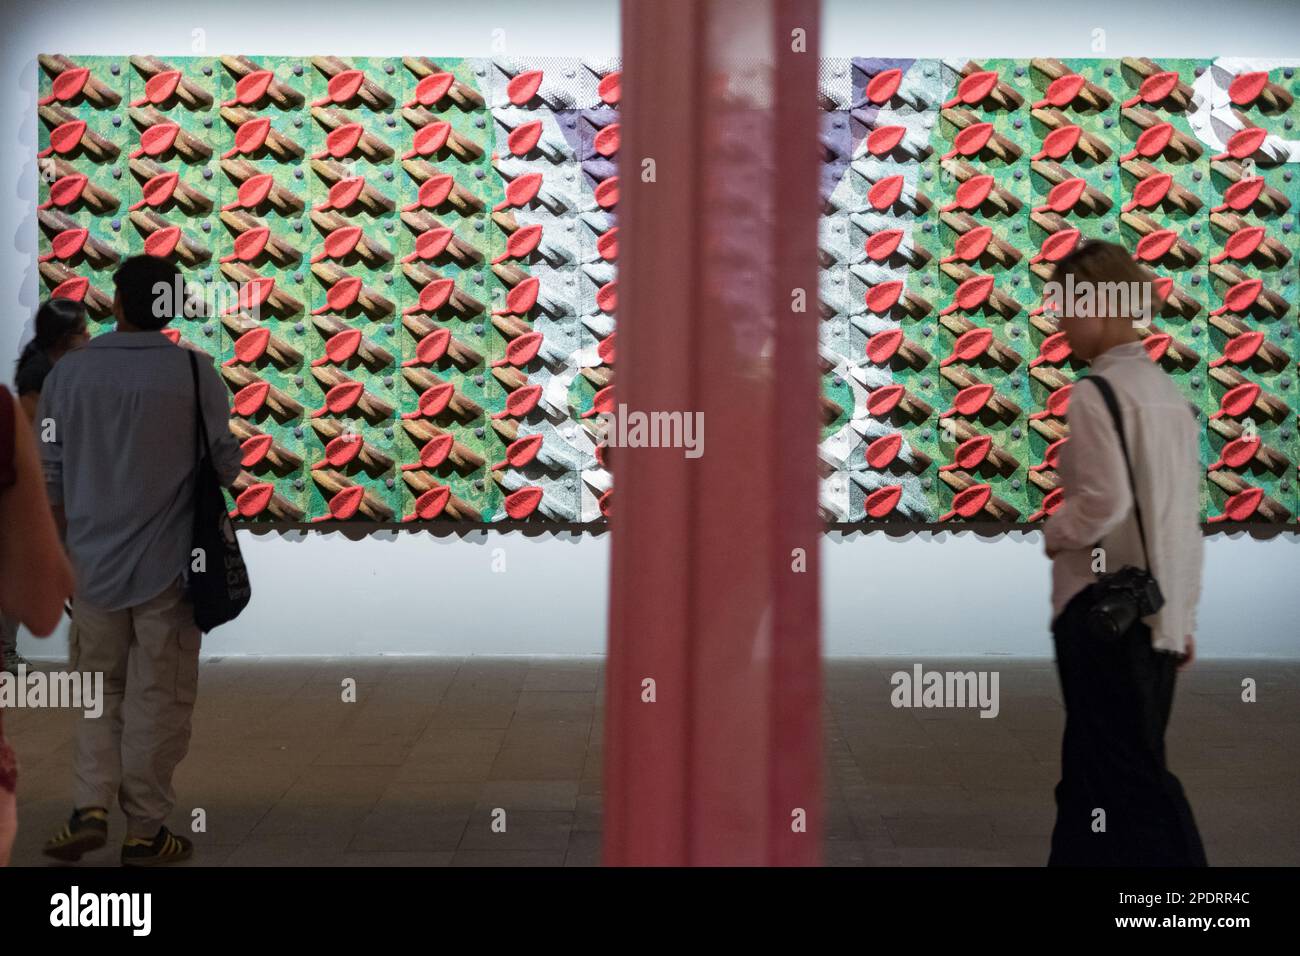 Una visione generale dell'opera foglie rosse dell'artista etiope Elias Sime alla Biennale di Venezia 2022 Foto Stock